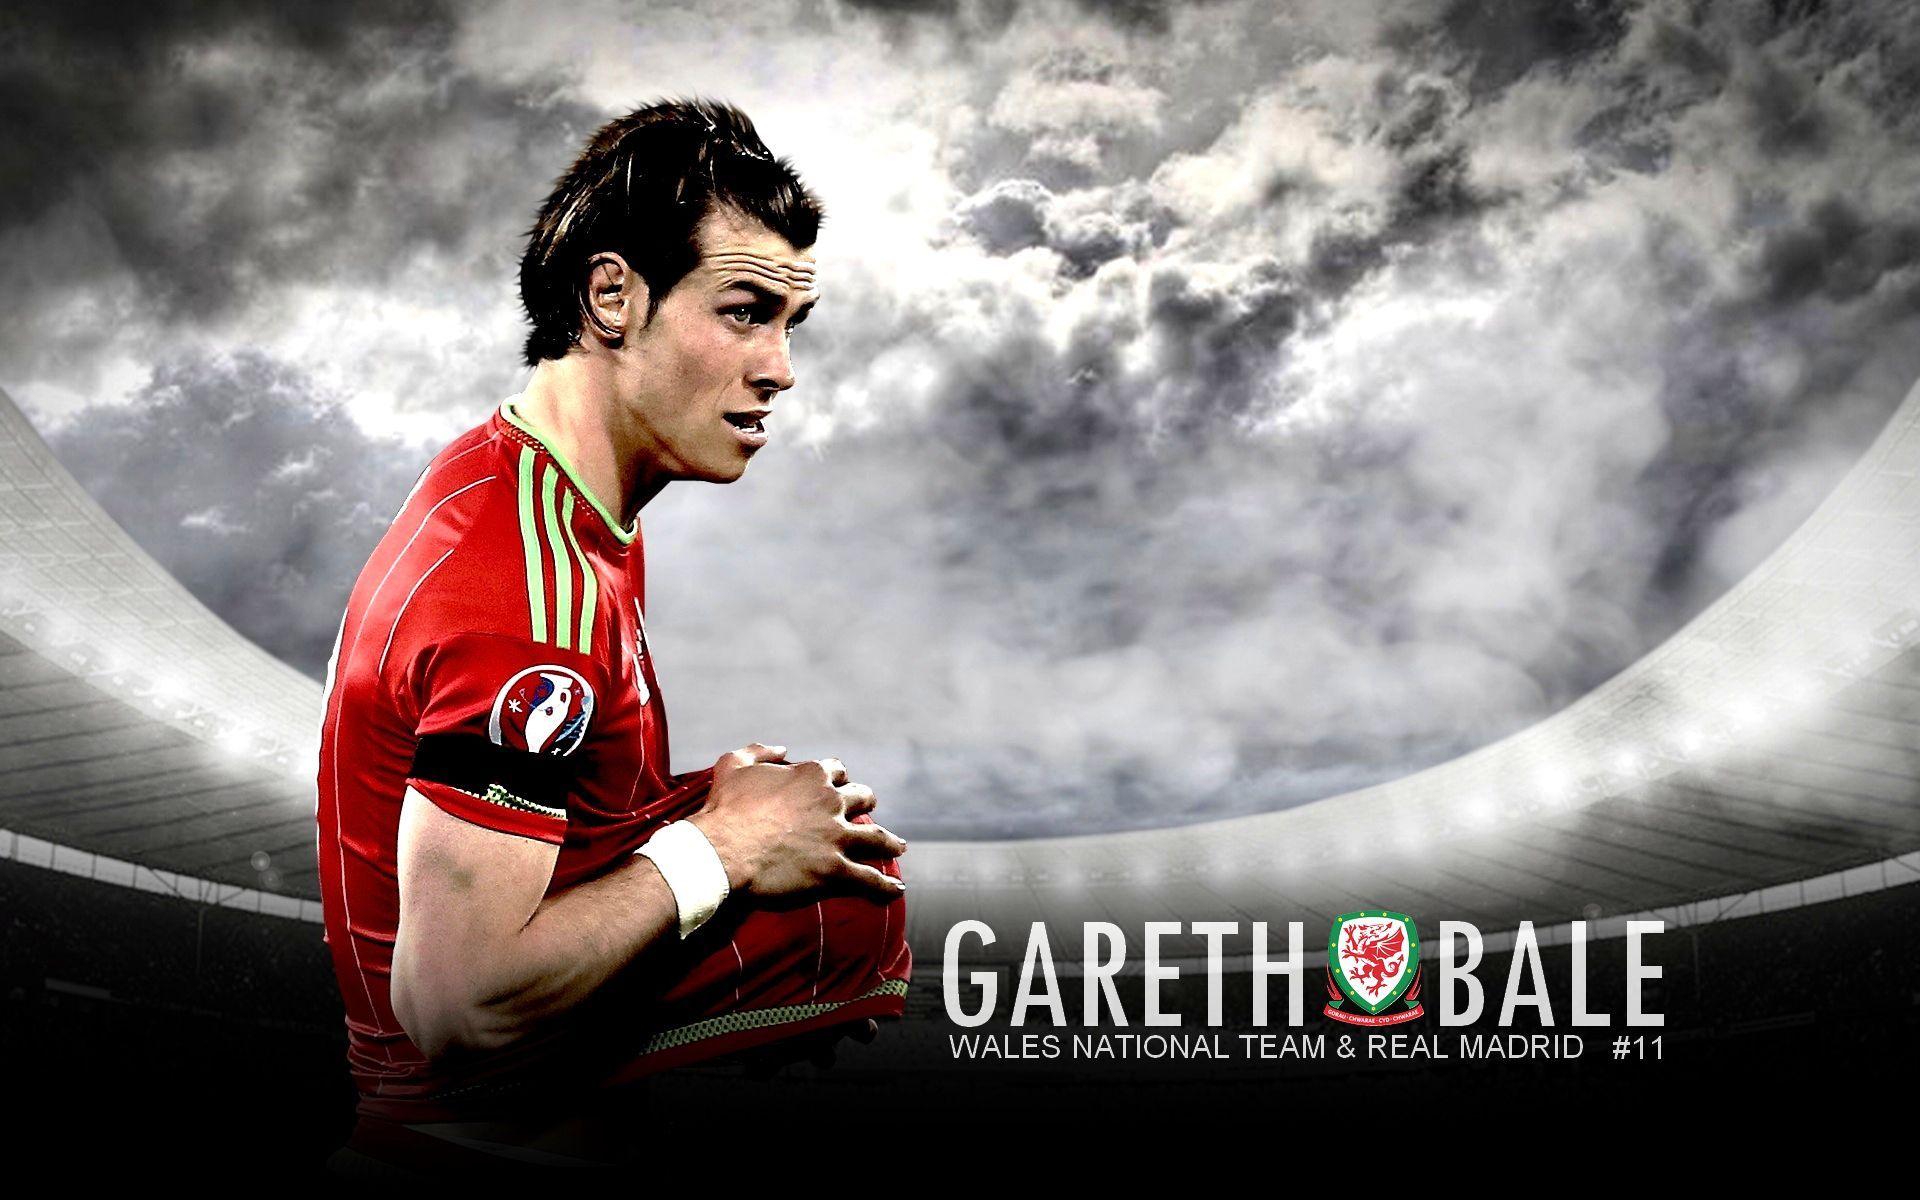 Gareth Bale Wallpaper, Picture, Image